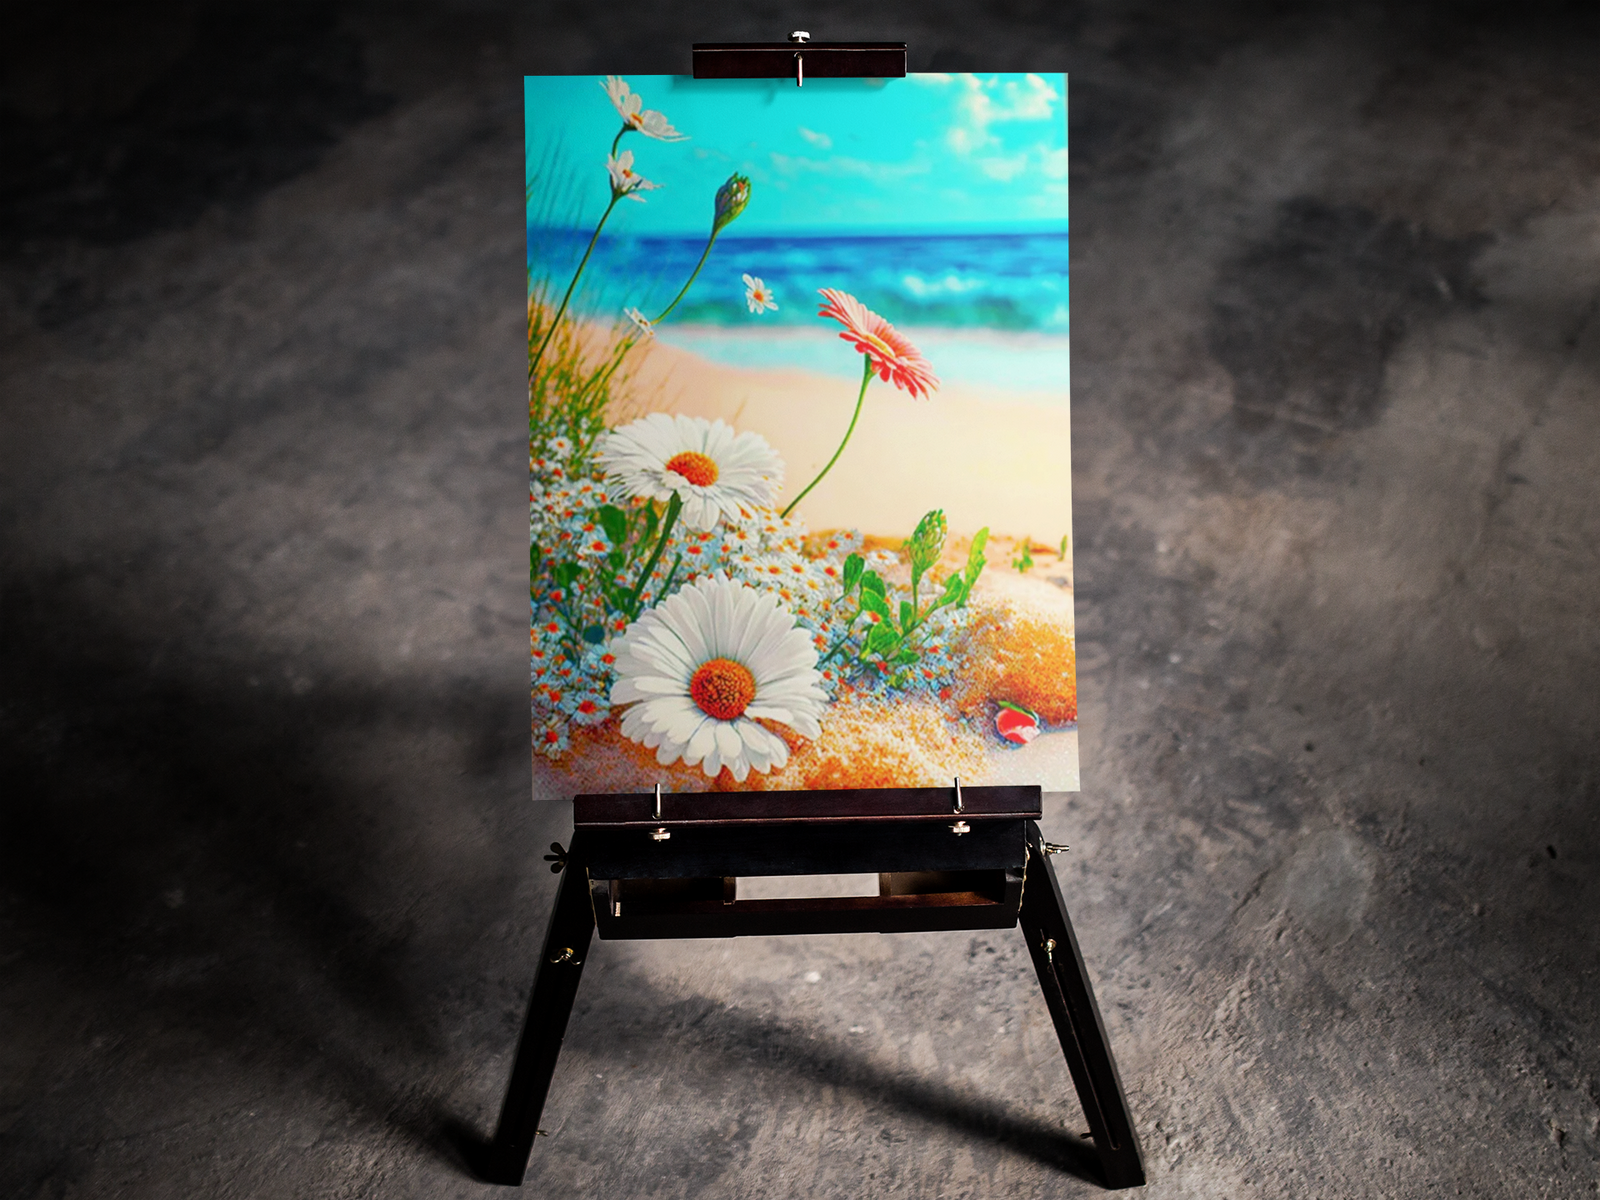 Daisies by the Beach 5D Diamond Art Kit